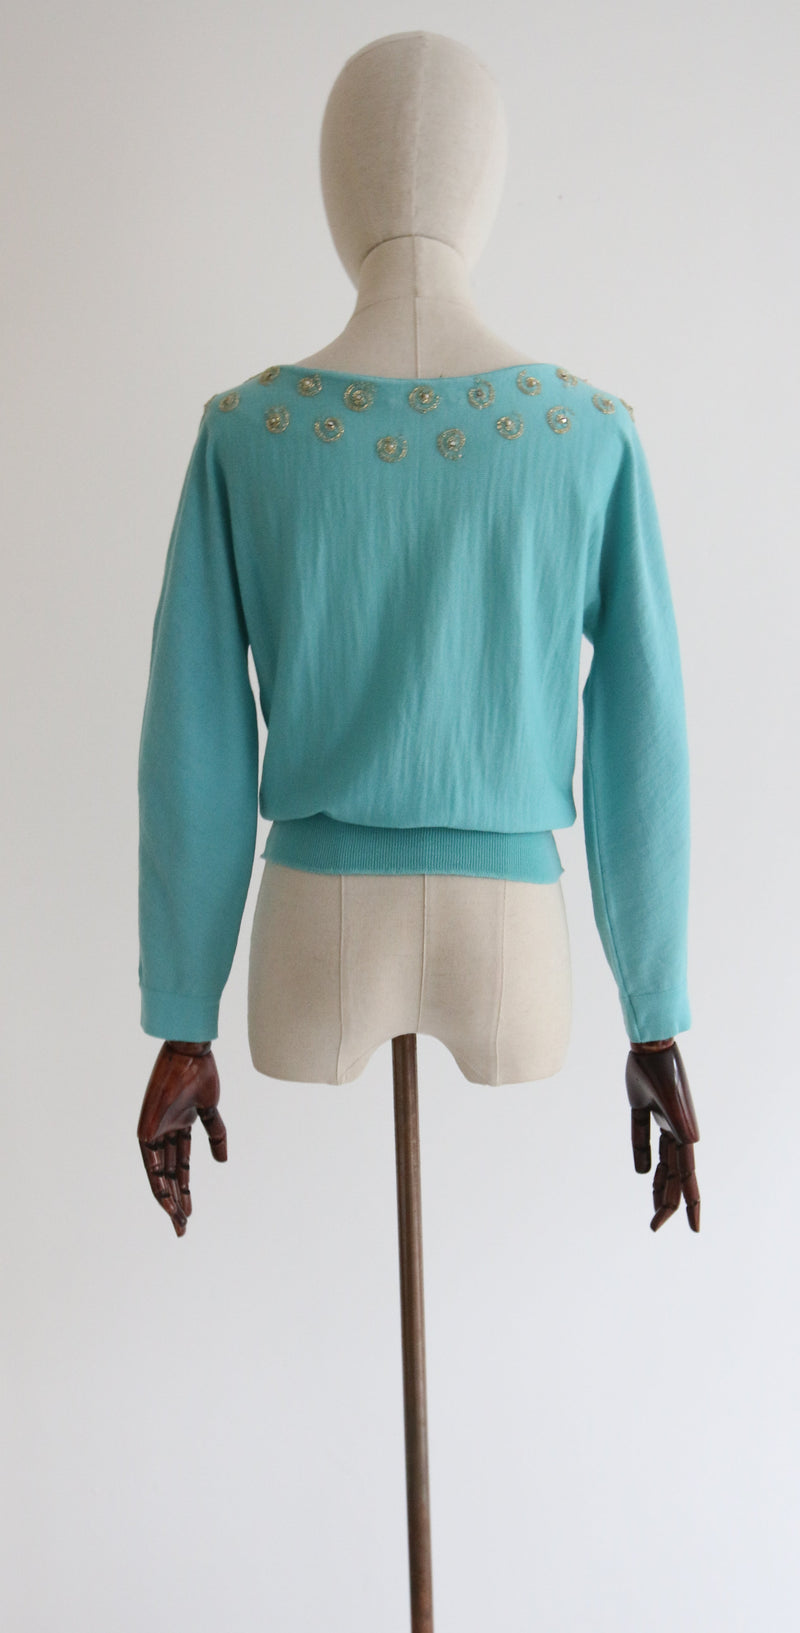 "Gold Spirals" Vintage 1960's Turquoise Wool Embellished Jumper UK 10-12 US 6-8